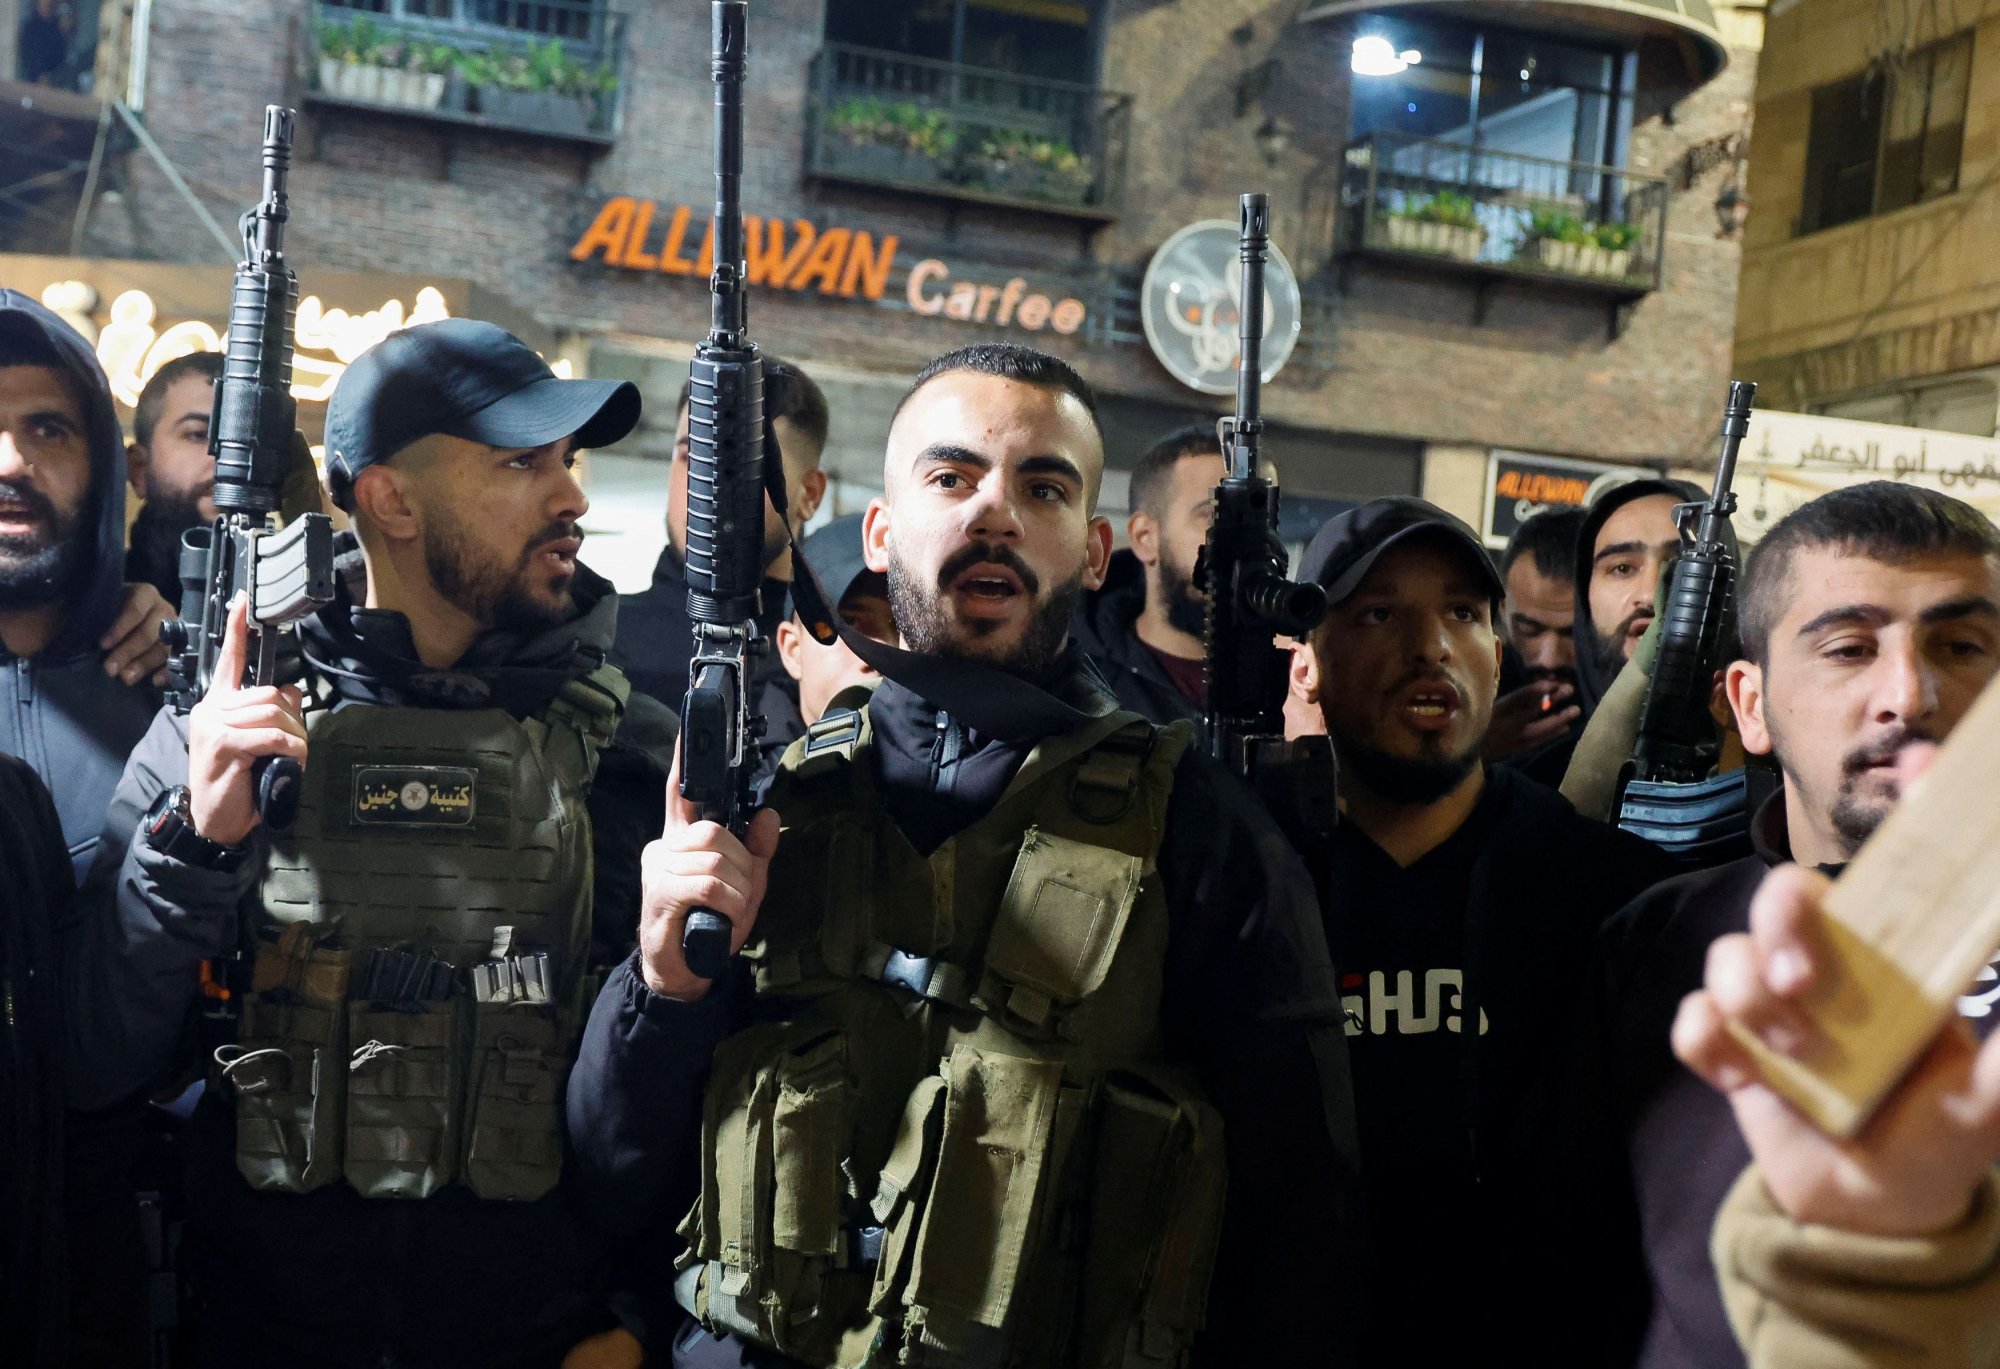 Χεζμπολάχ για Σάλεχ αλ Αρούρι: «Δε θα μείνει ατιμώρητη η δολοφονική επίθεση»